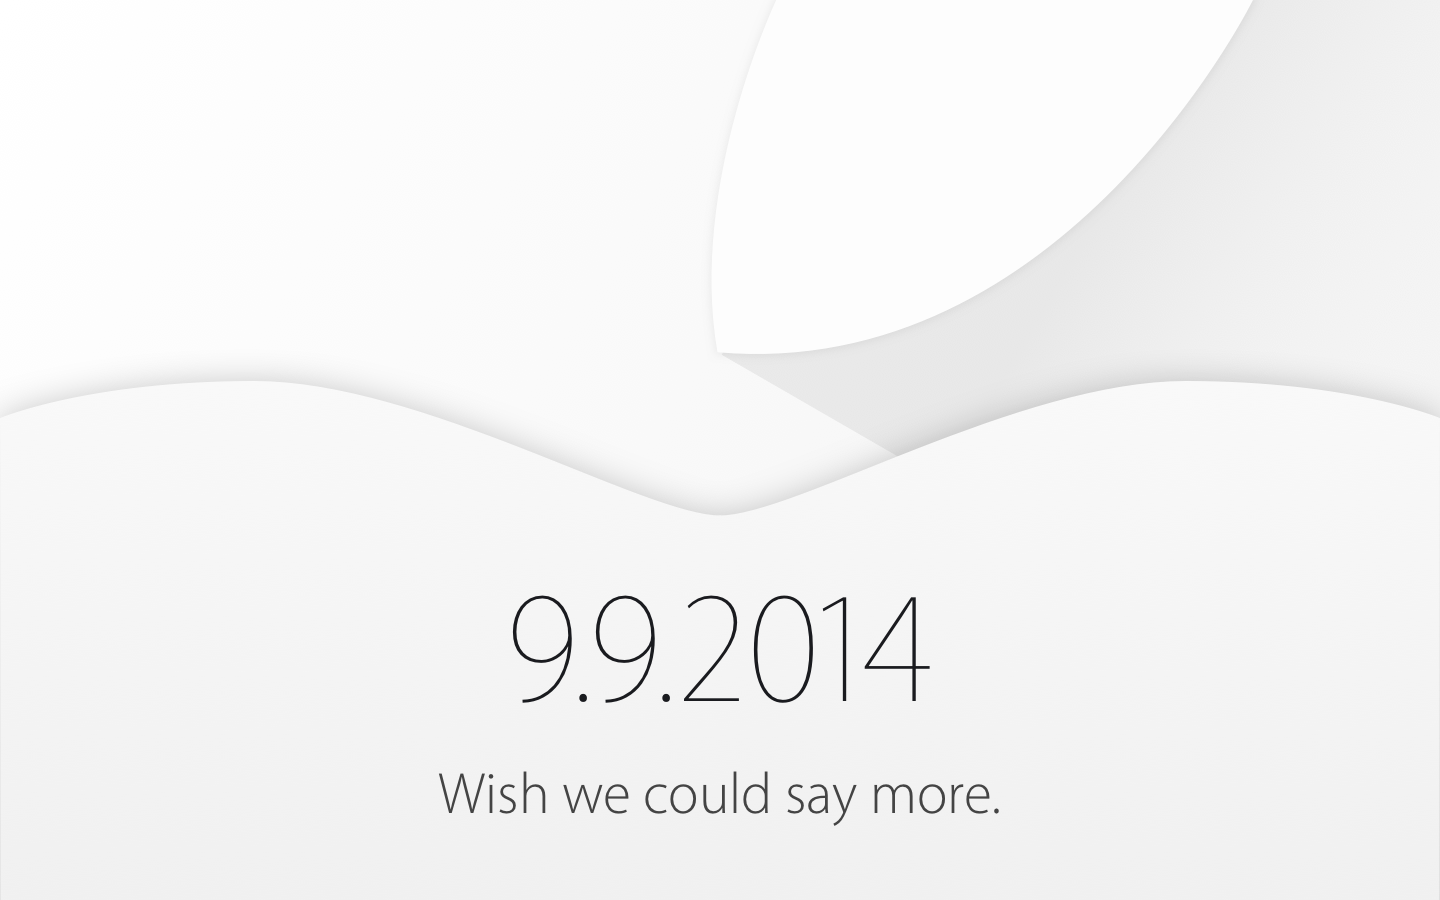 Презентация iPhone 6 - 9 сентября 2014 [Прямая трансляция]